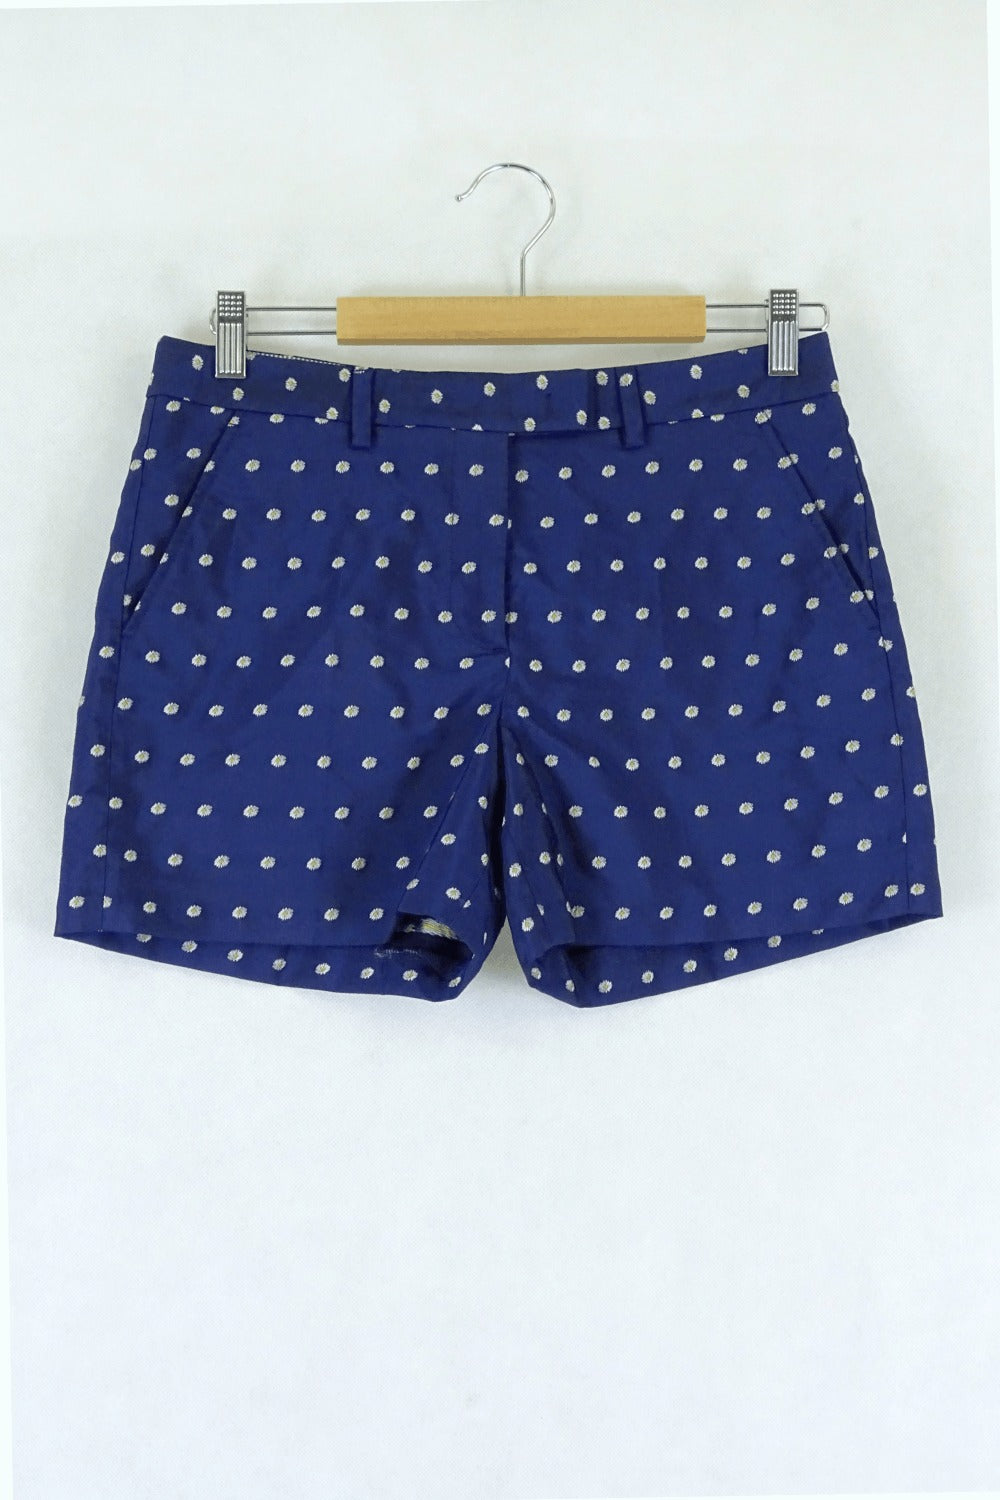 Gant Blue Shorts 10